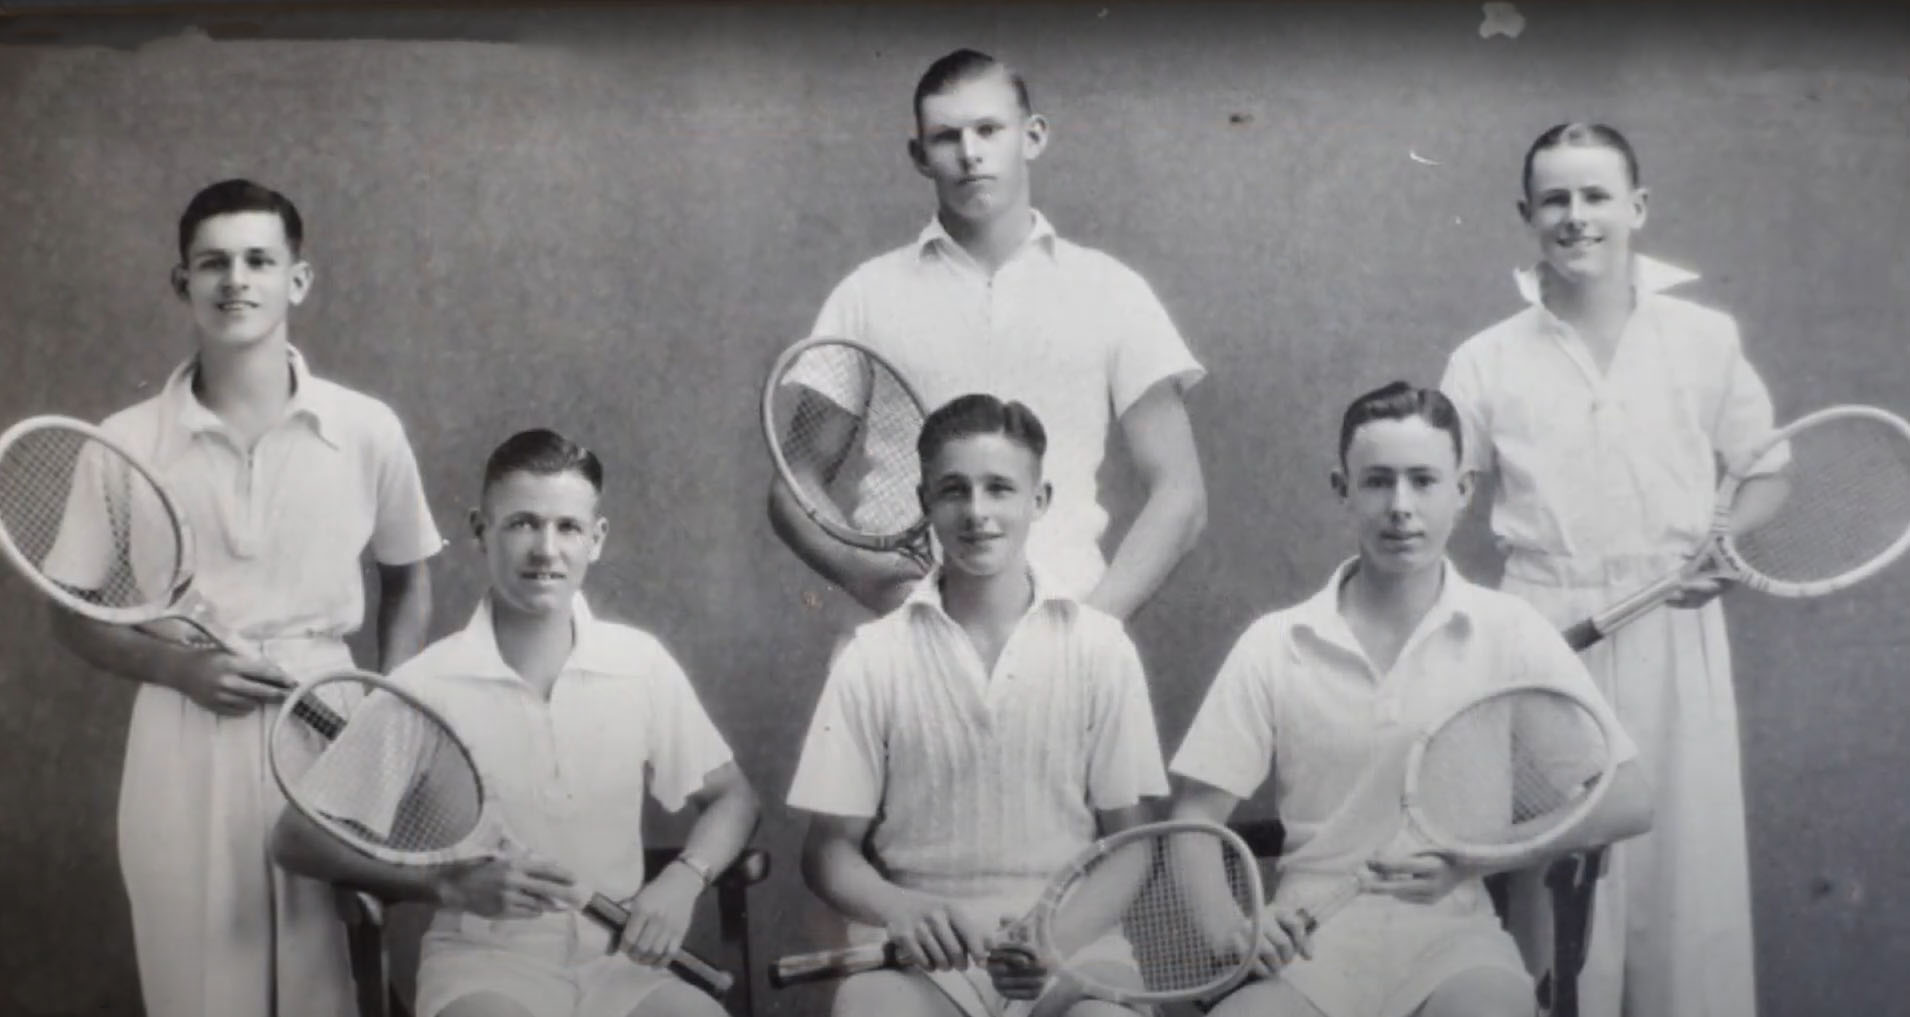 Mt Lawley Tennis Club junior boys winners 1935